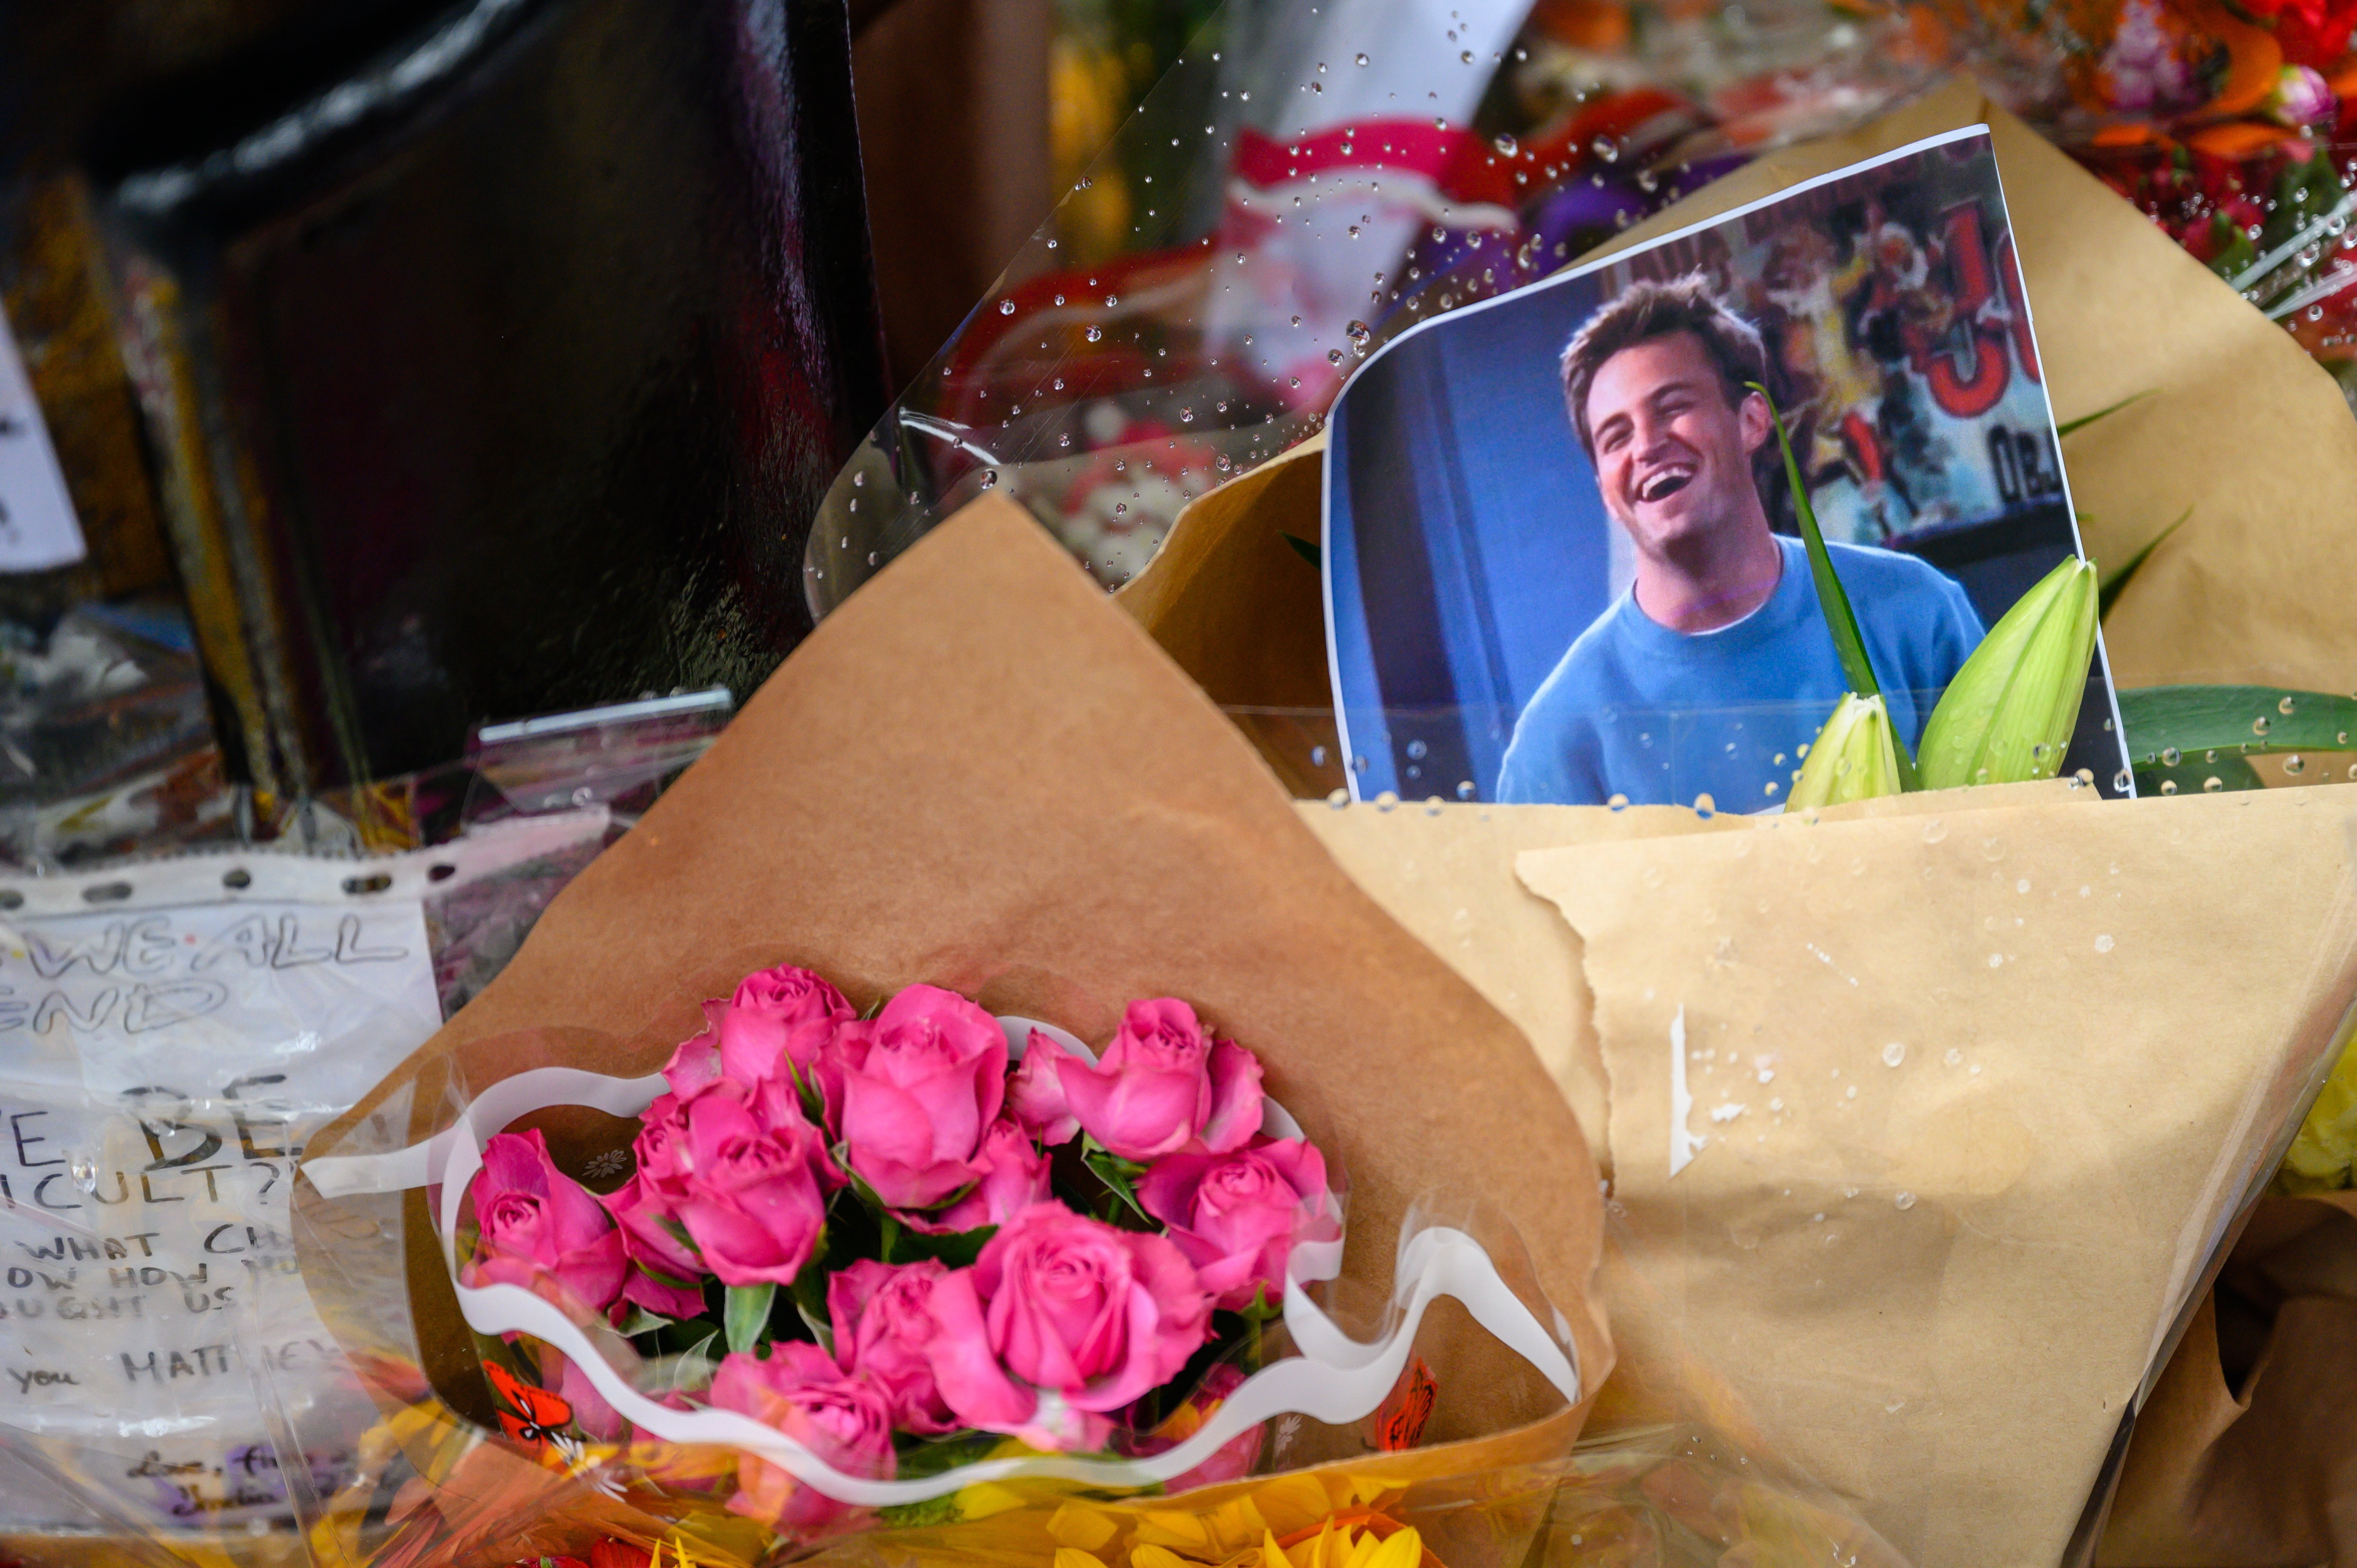 Los arreglos de flores sobre la tumba de Matthew Perry fueron retirados